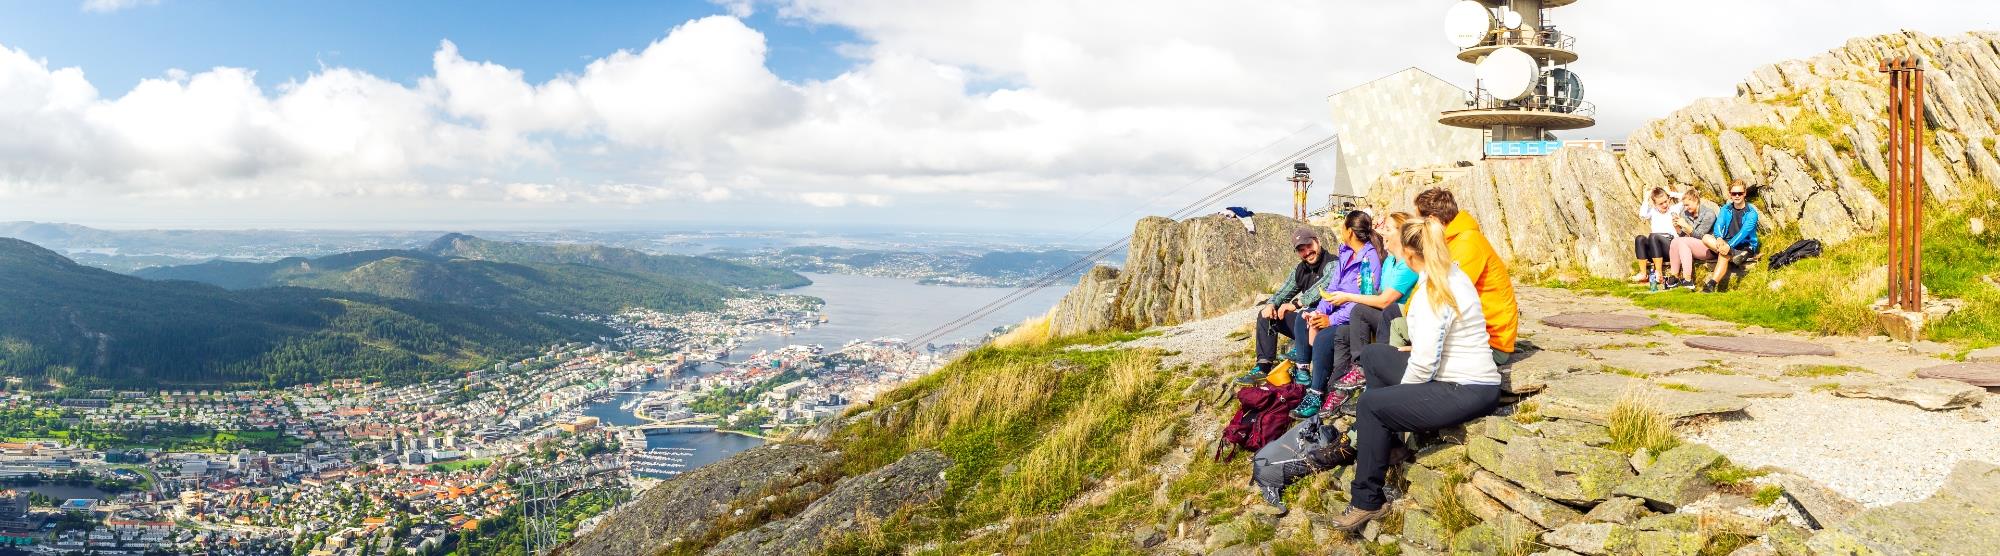 Wandern in Bergen und der Region - visitBergen.com